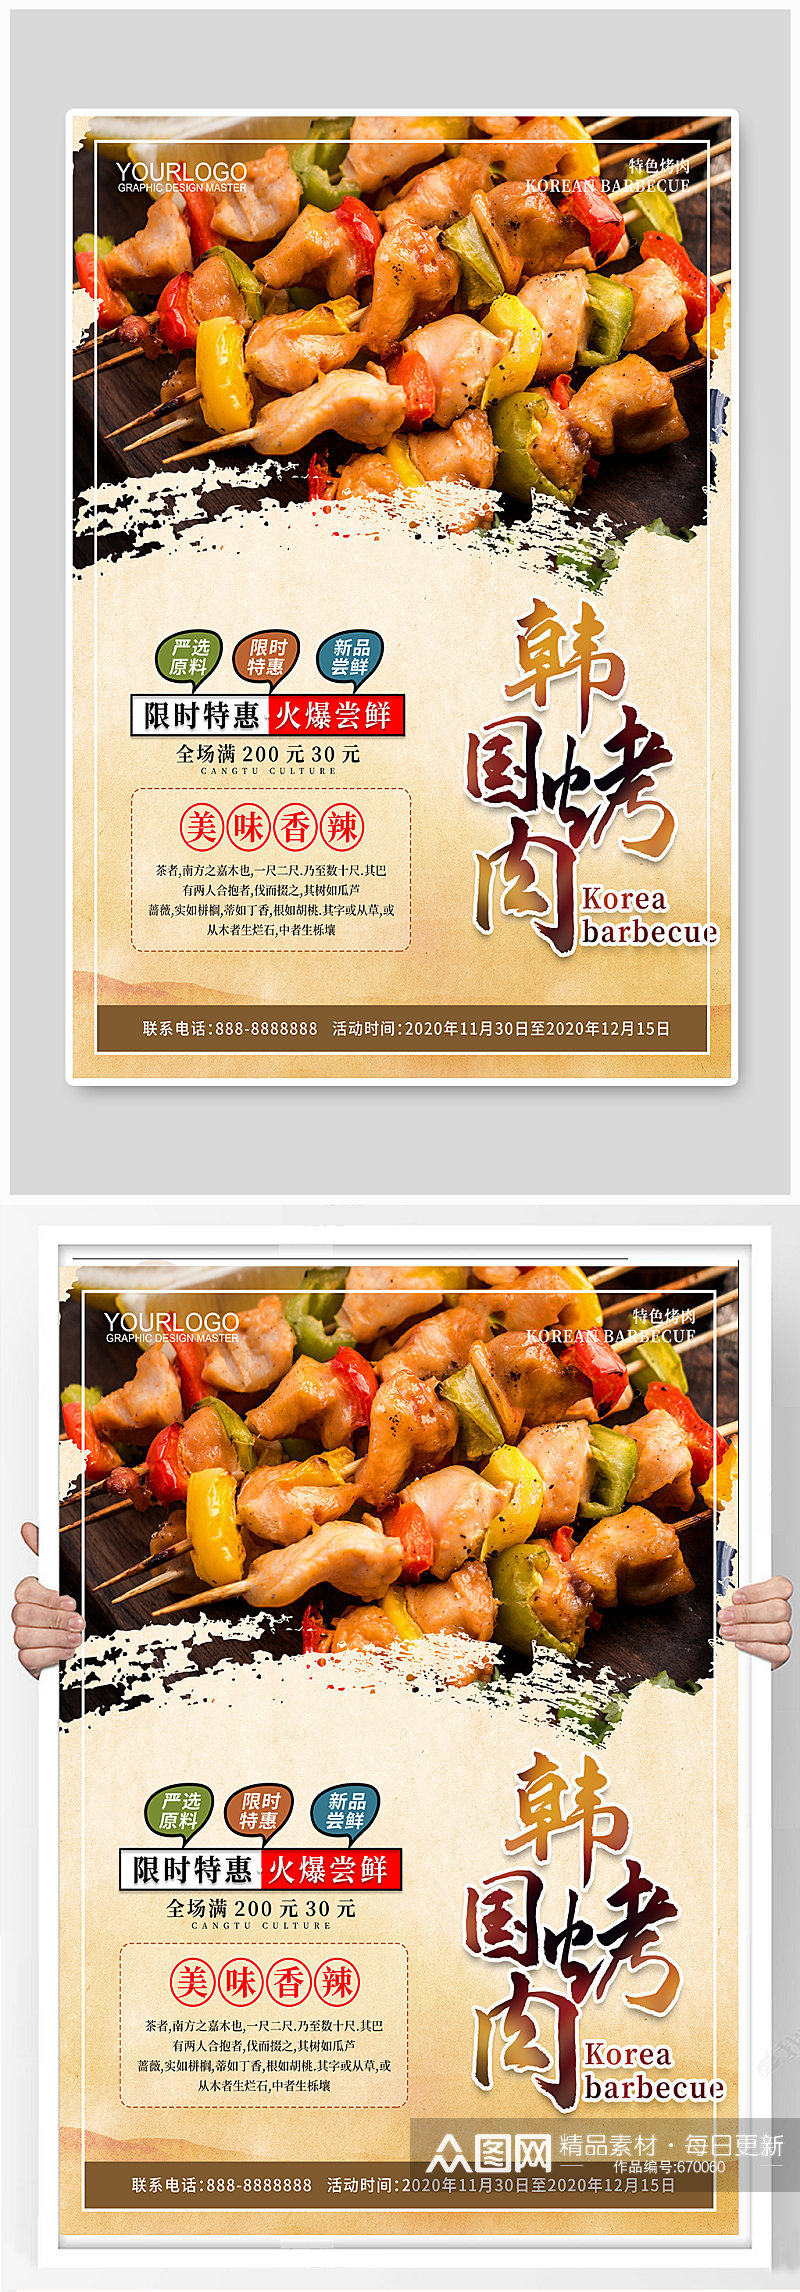 韩国烤肉烤肉海报素材